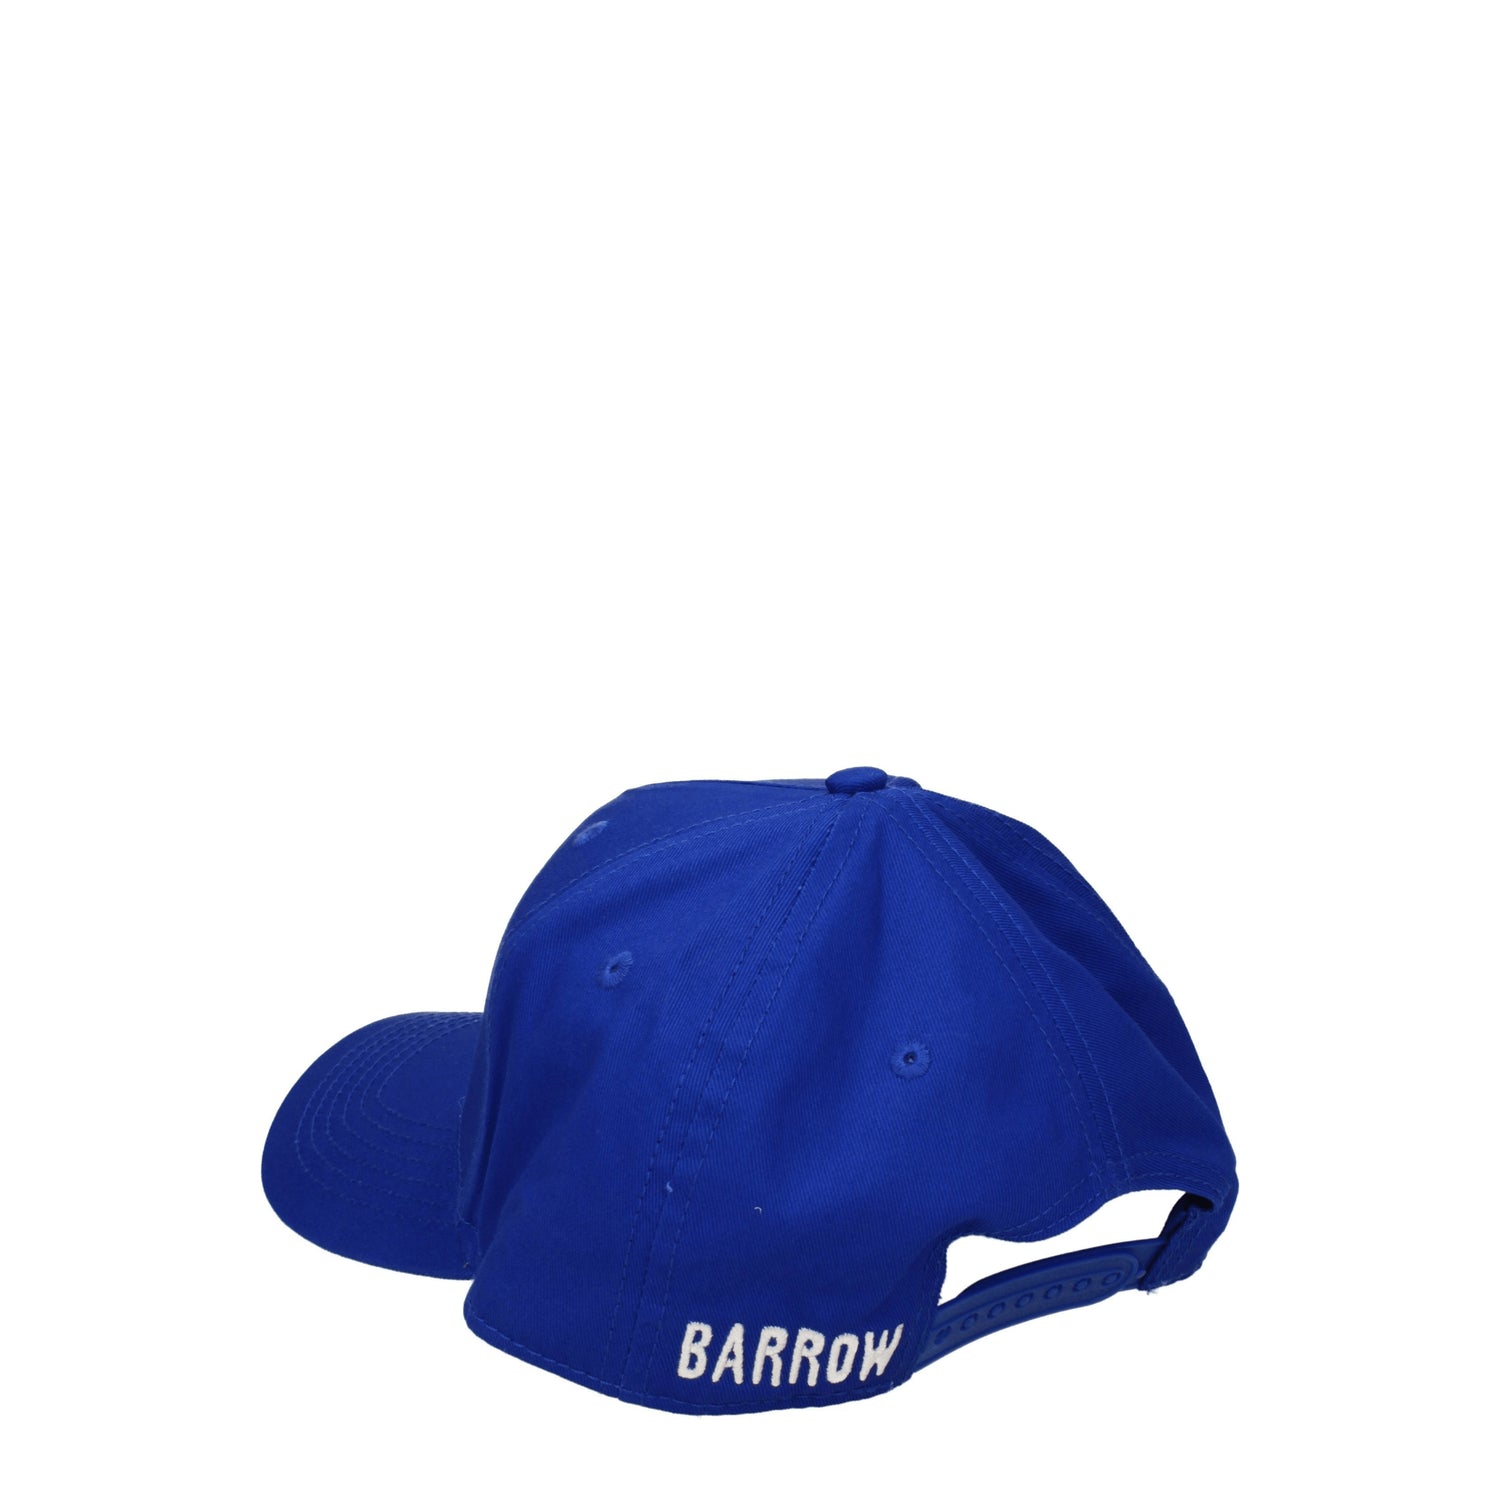 Barrow Cappelli Uomo Cotone Blu Blu Elettrico